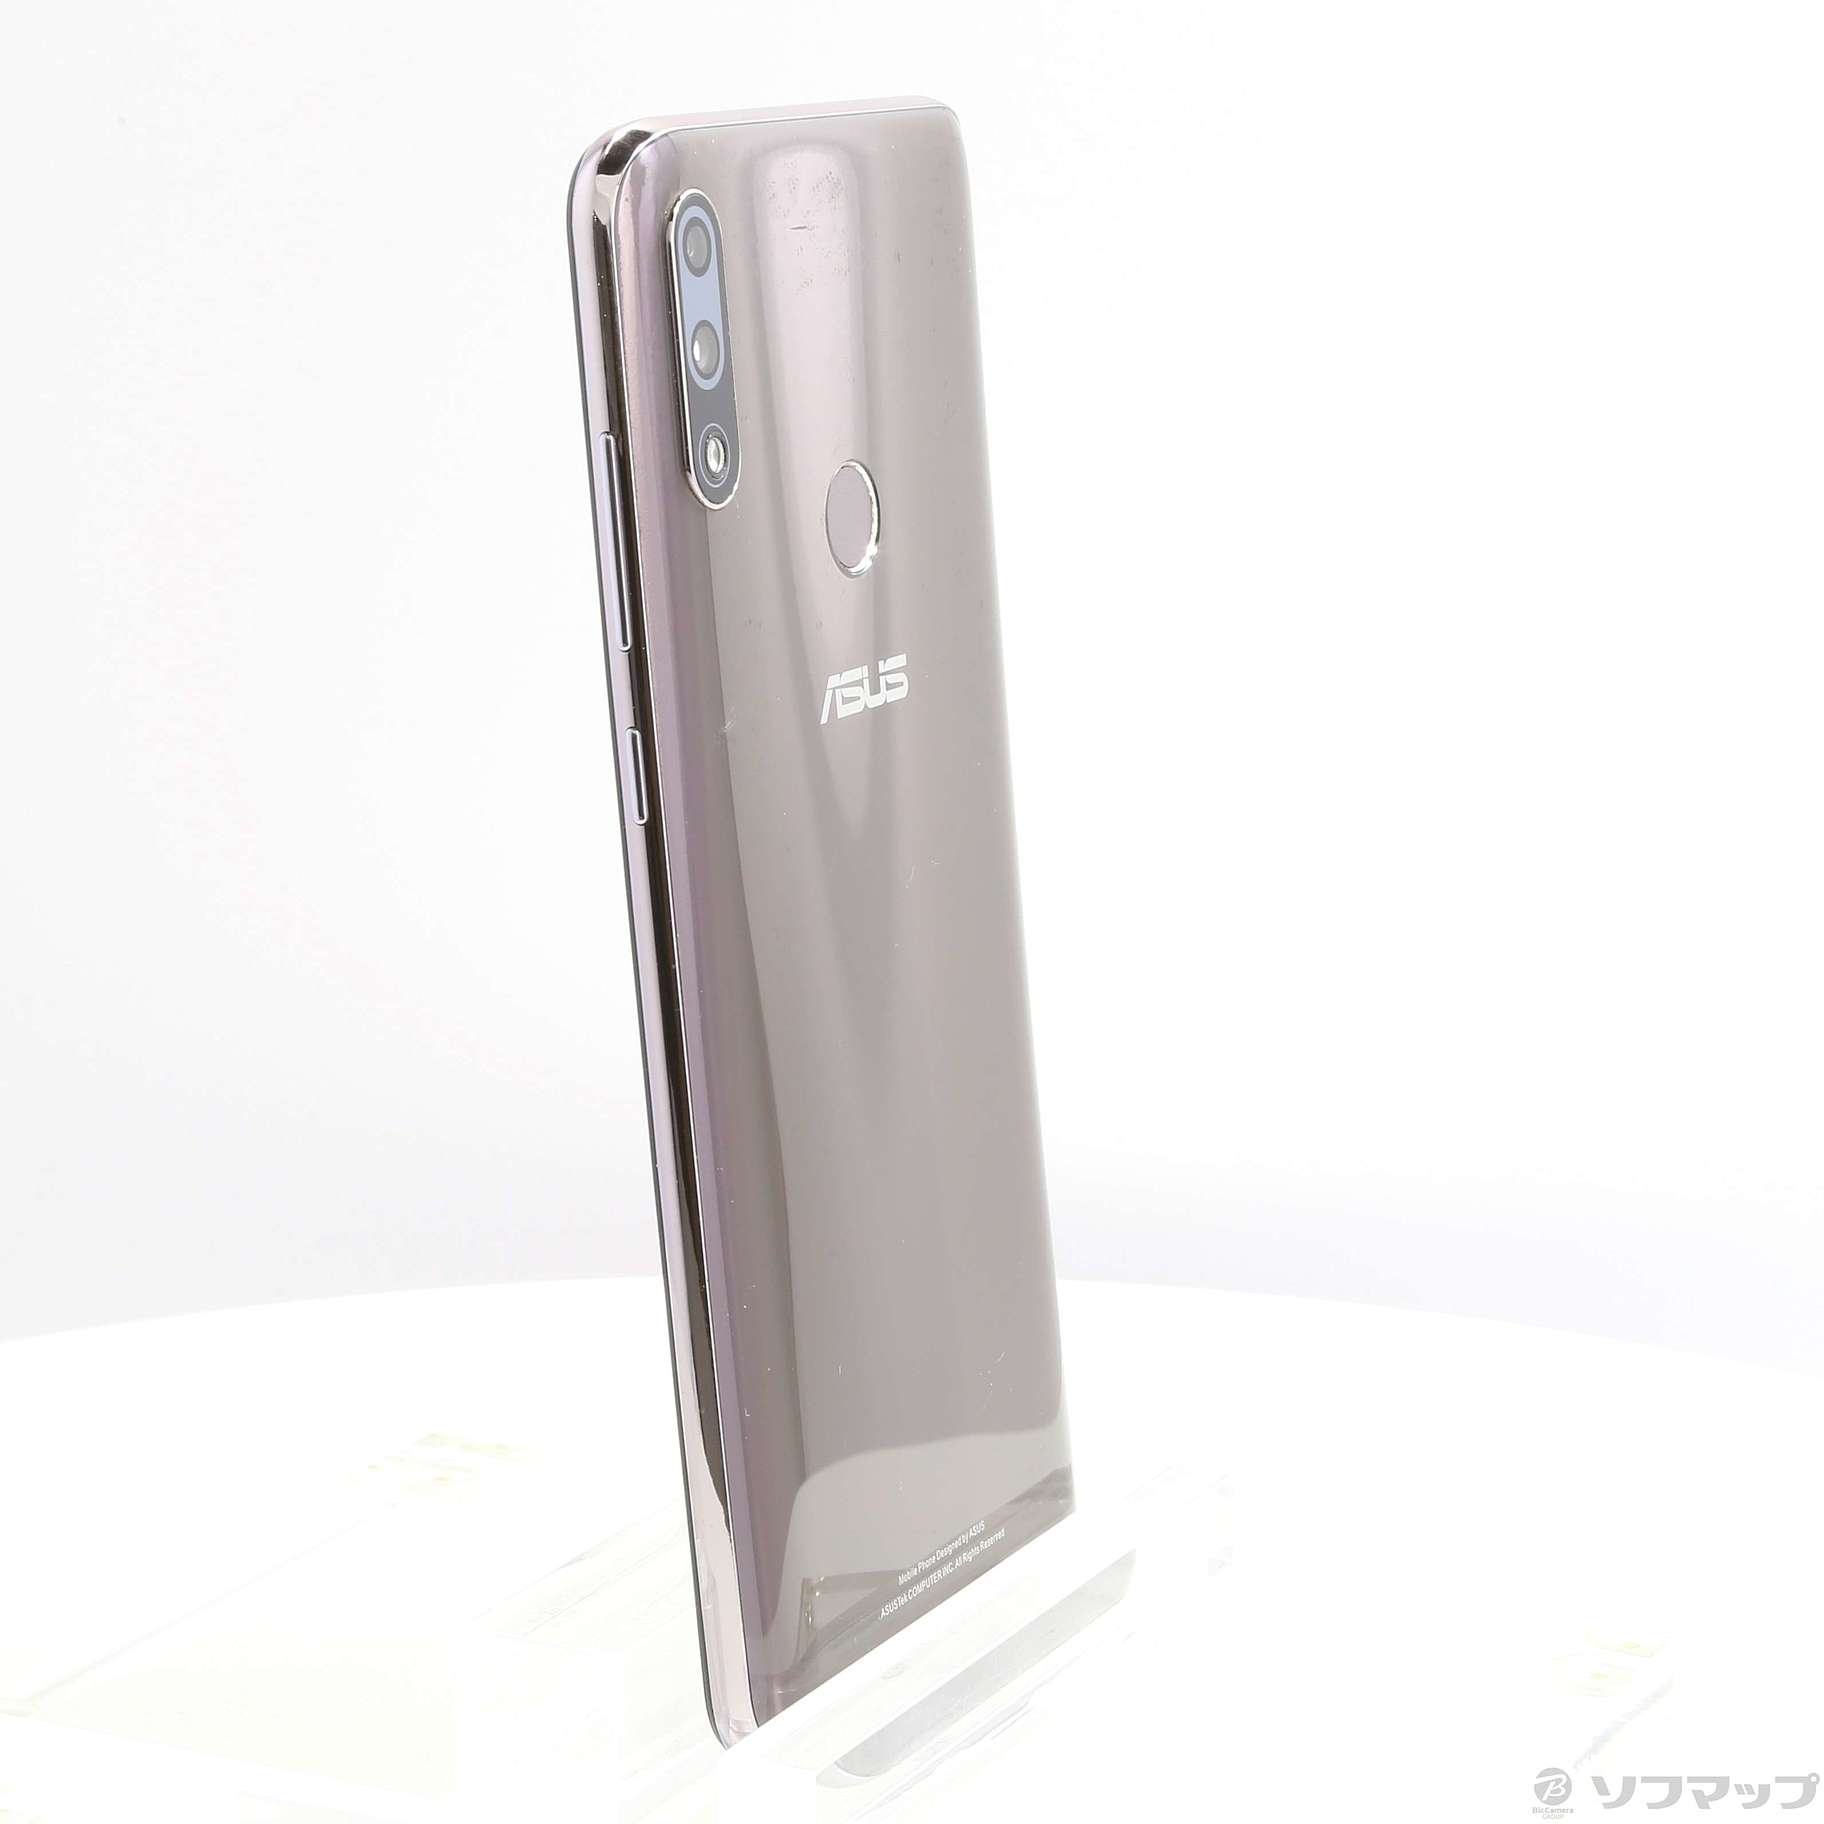 中古】ZenFone Max Pro M2 64GB コズミックチタニウム ZB631KL-TI64S4 ...